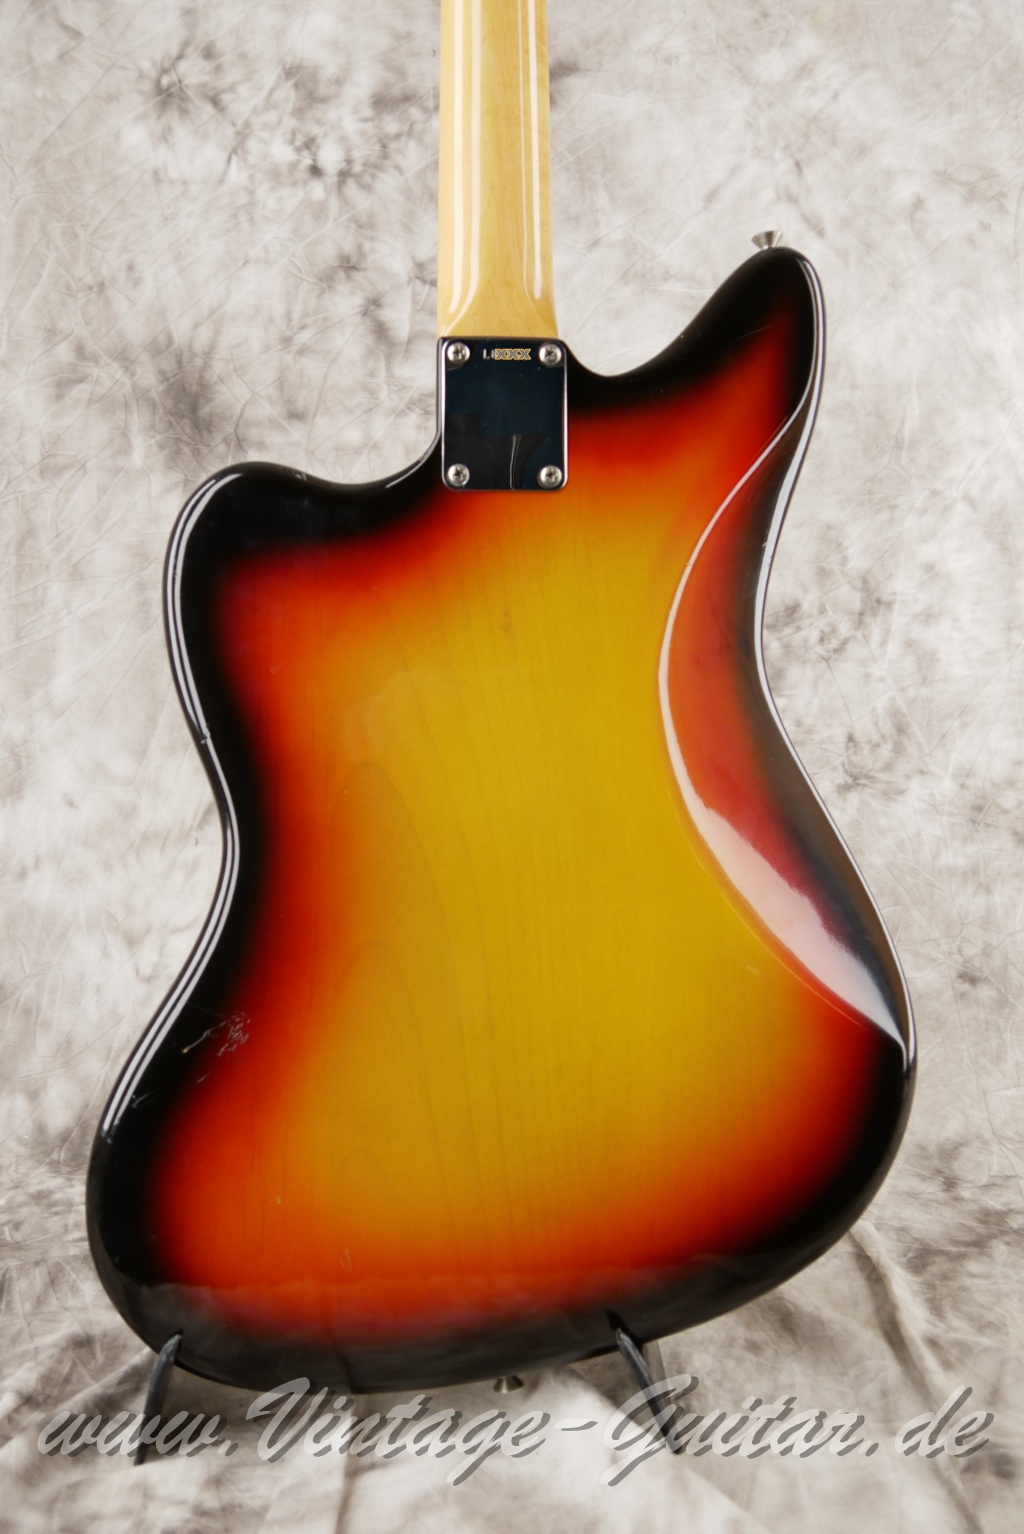 Fender_Jaguar_sunburst_1965_brown_case-008.JPG